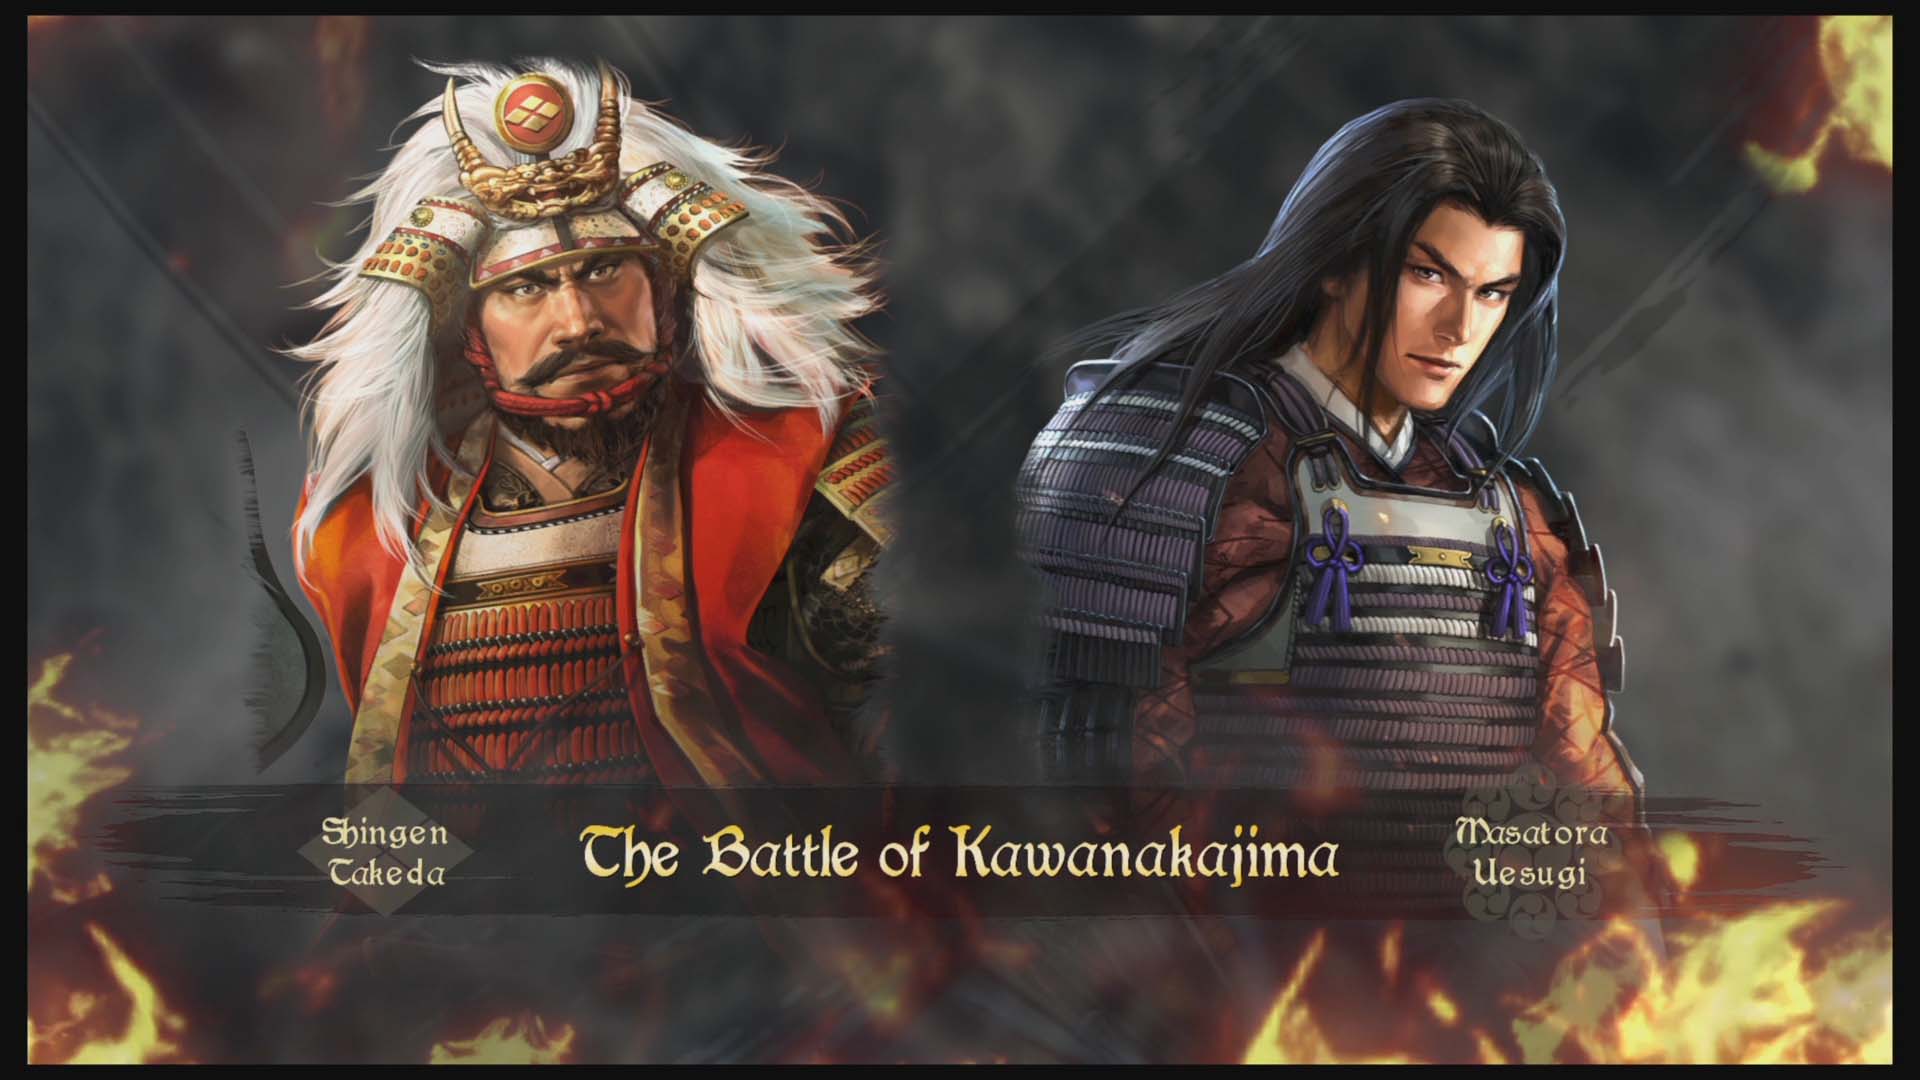 Nobunaga’s Ambition: Taishi nos llevará a la Era Sengoku este viernes